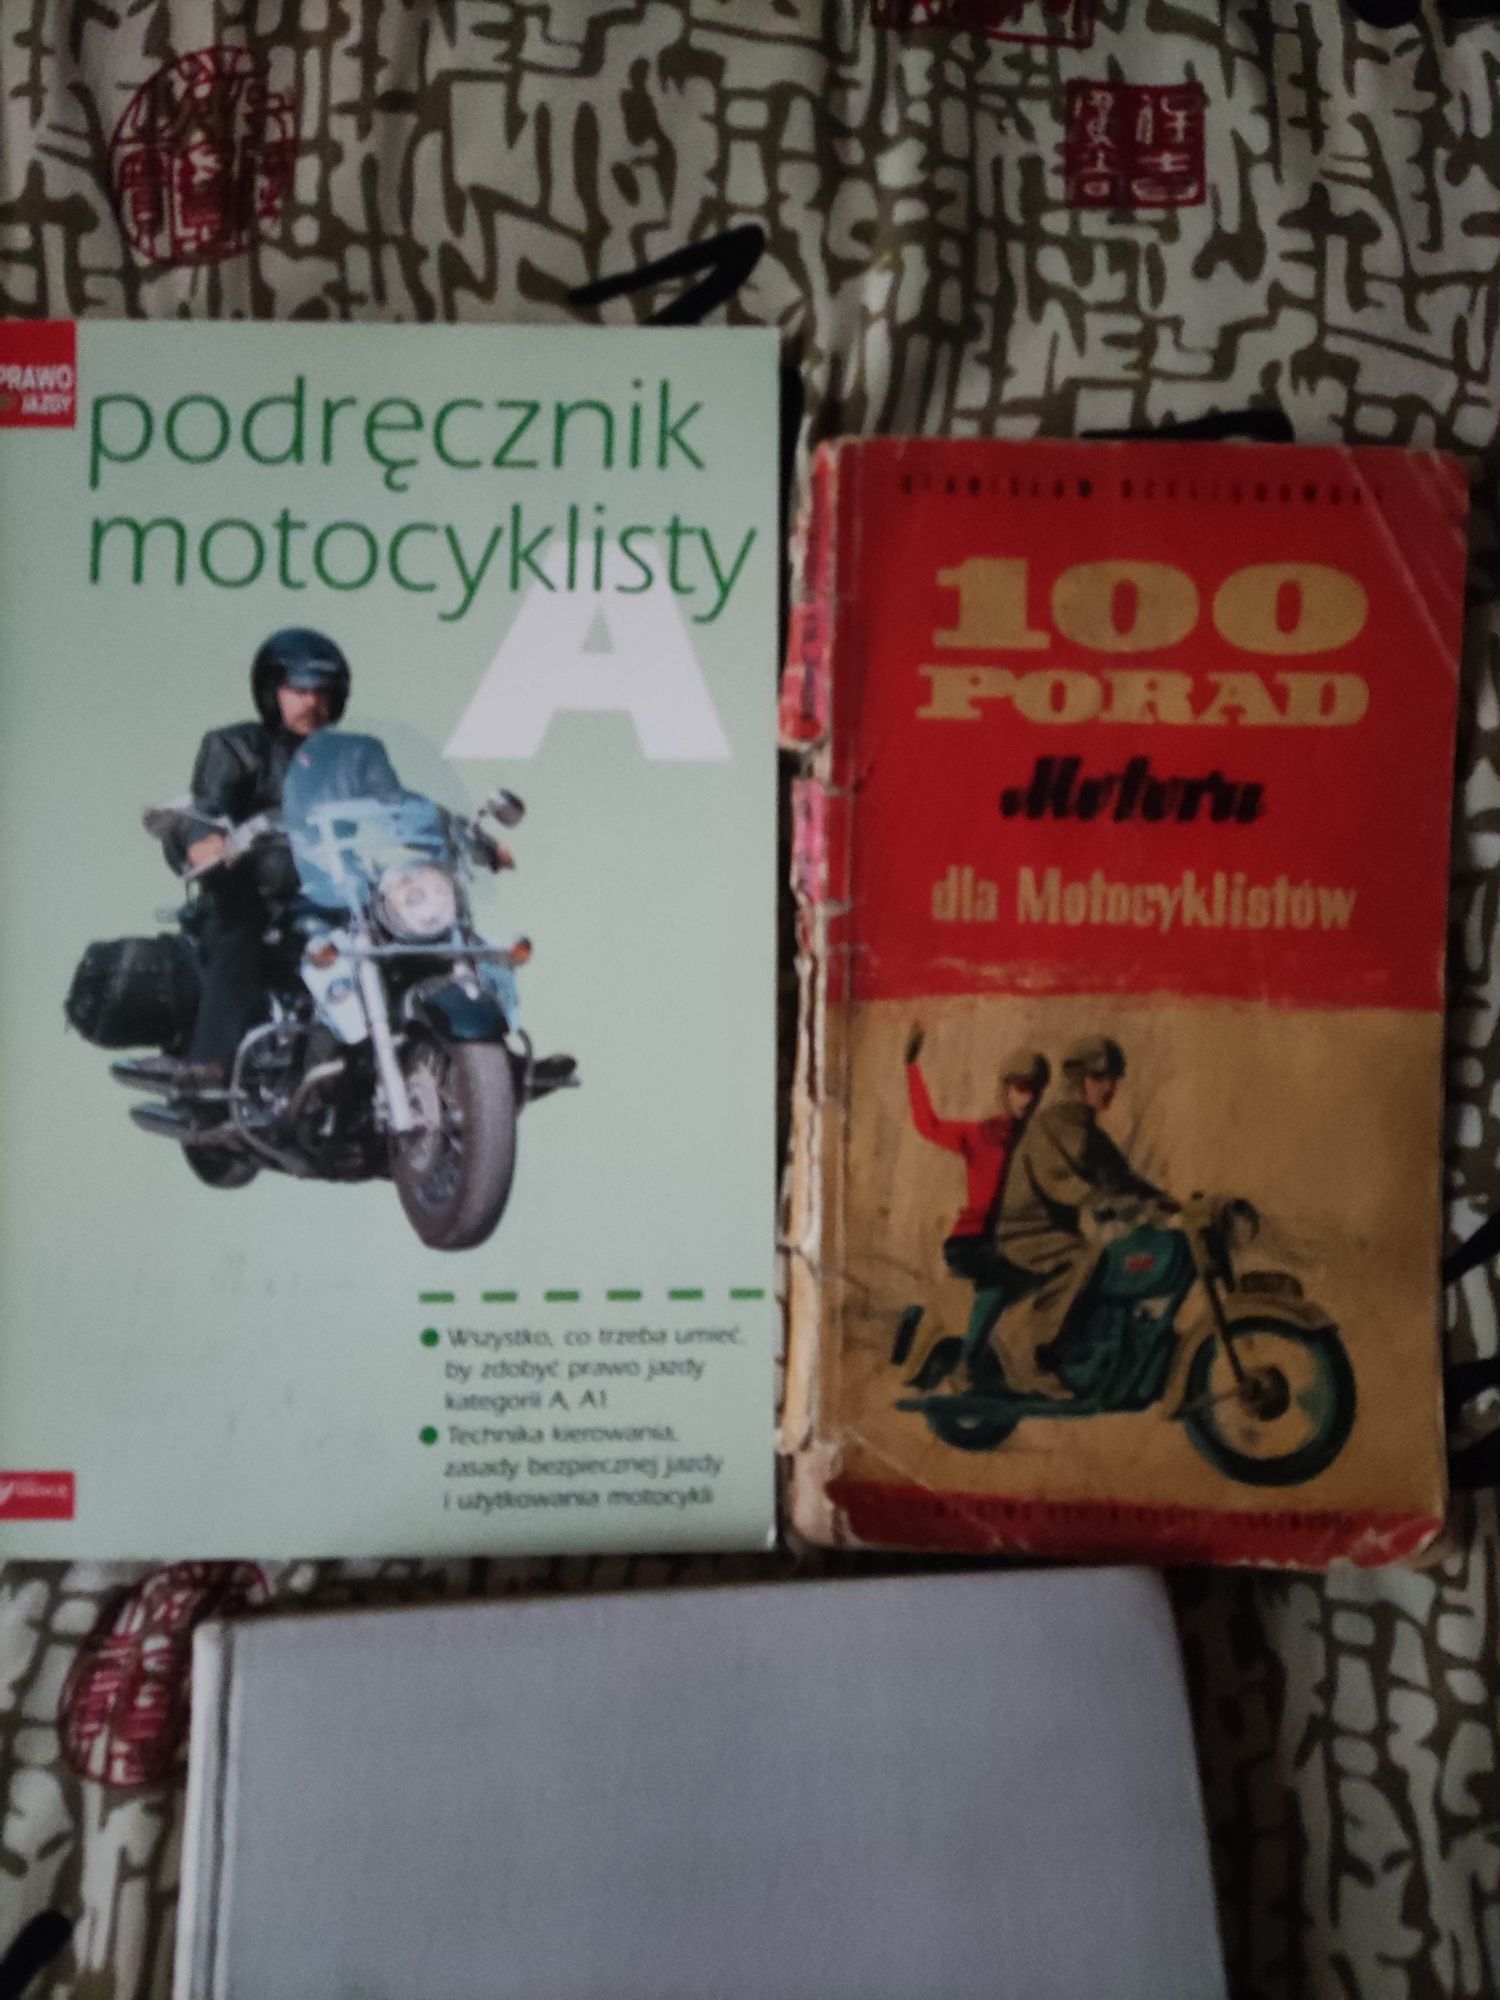 Książki o motocyklach i motorowerach z czasów PRL-u

Pytaj o ceny.

Po